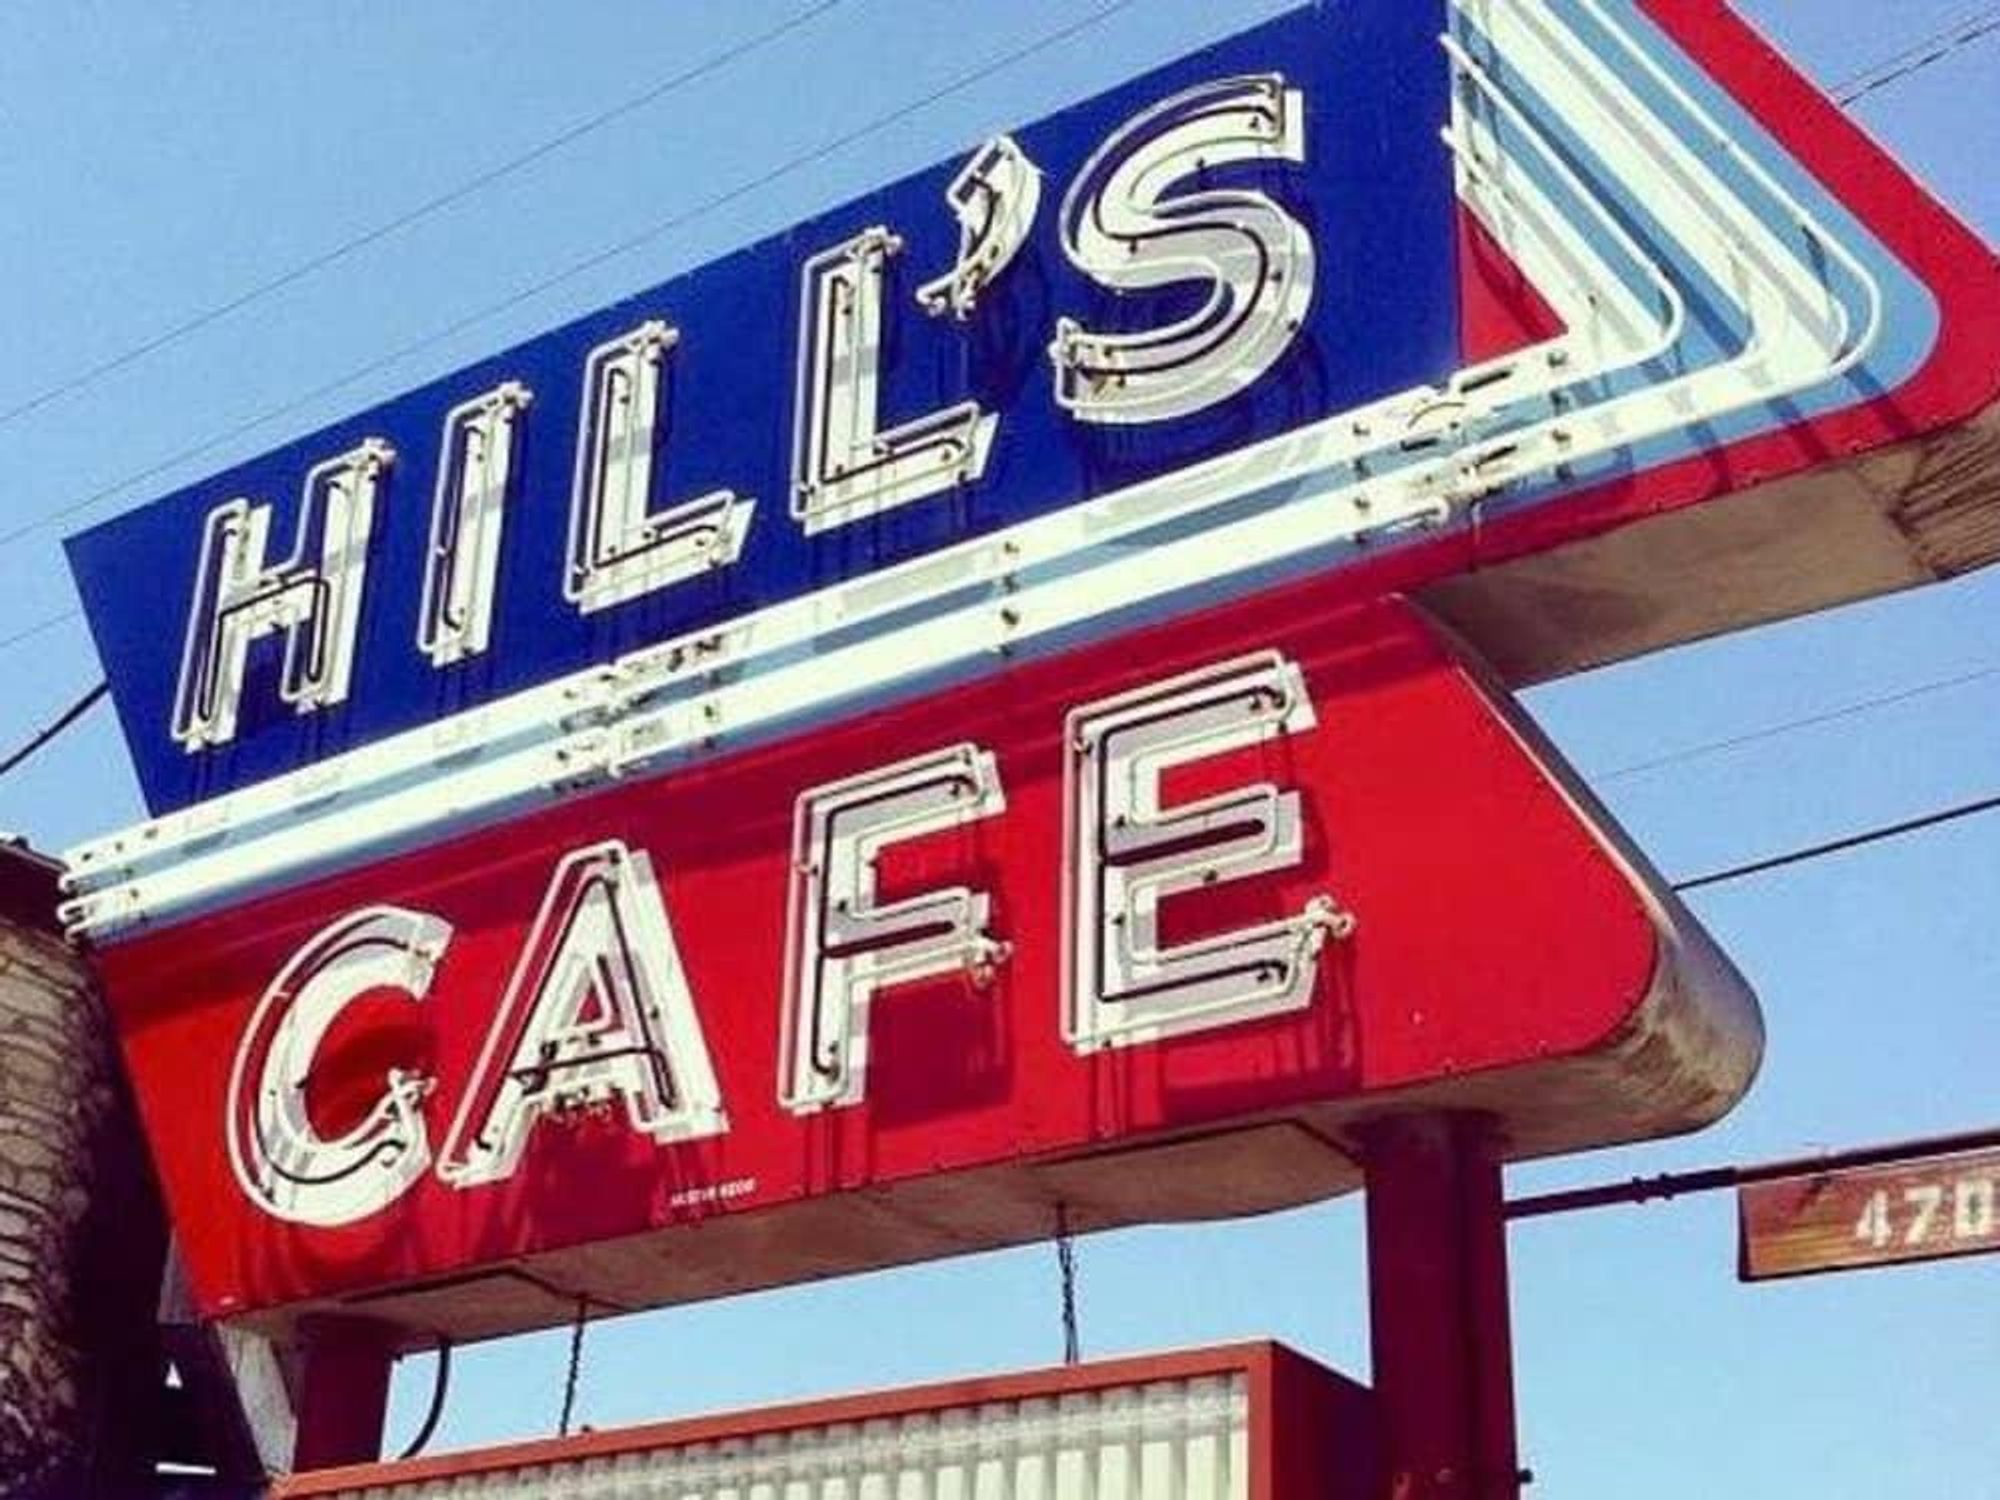 Hill's Cafe Austin